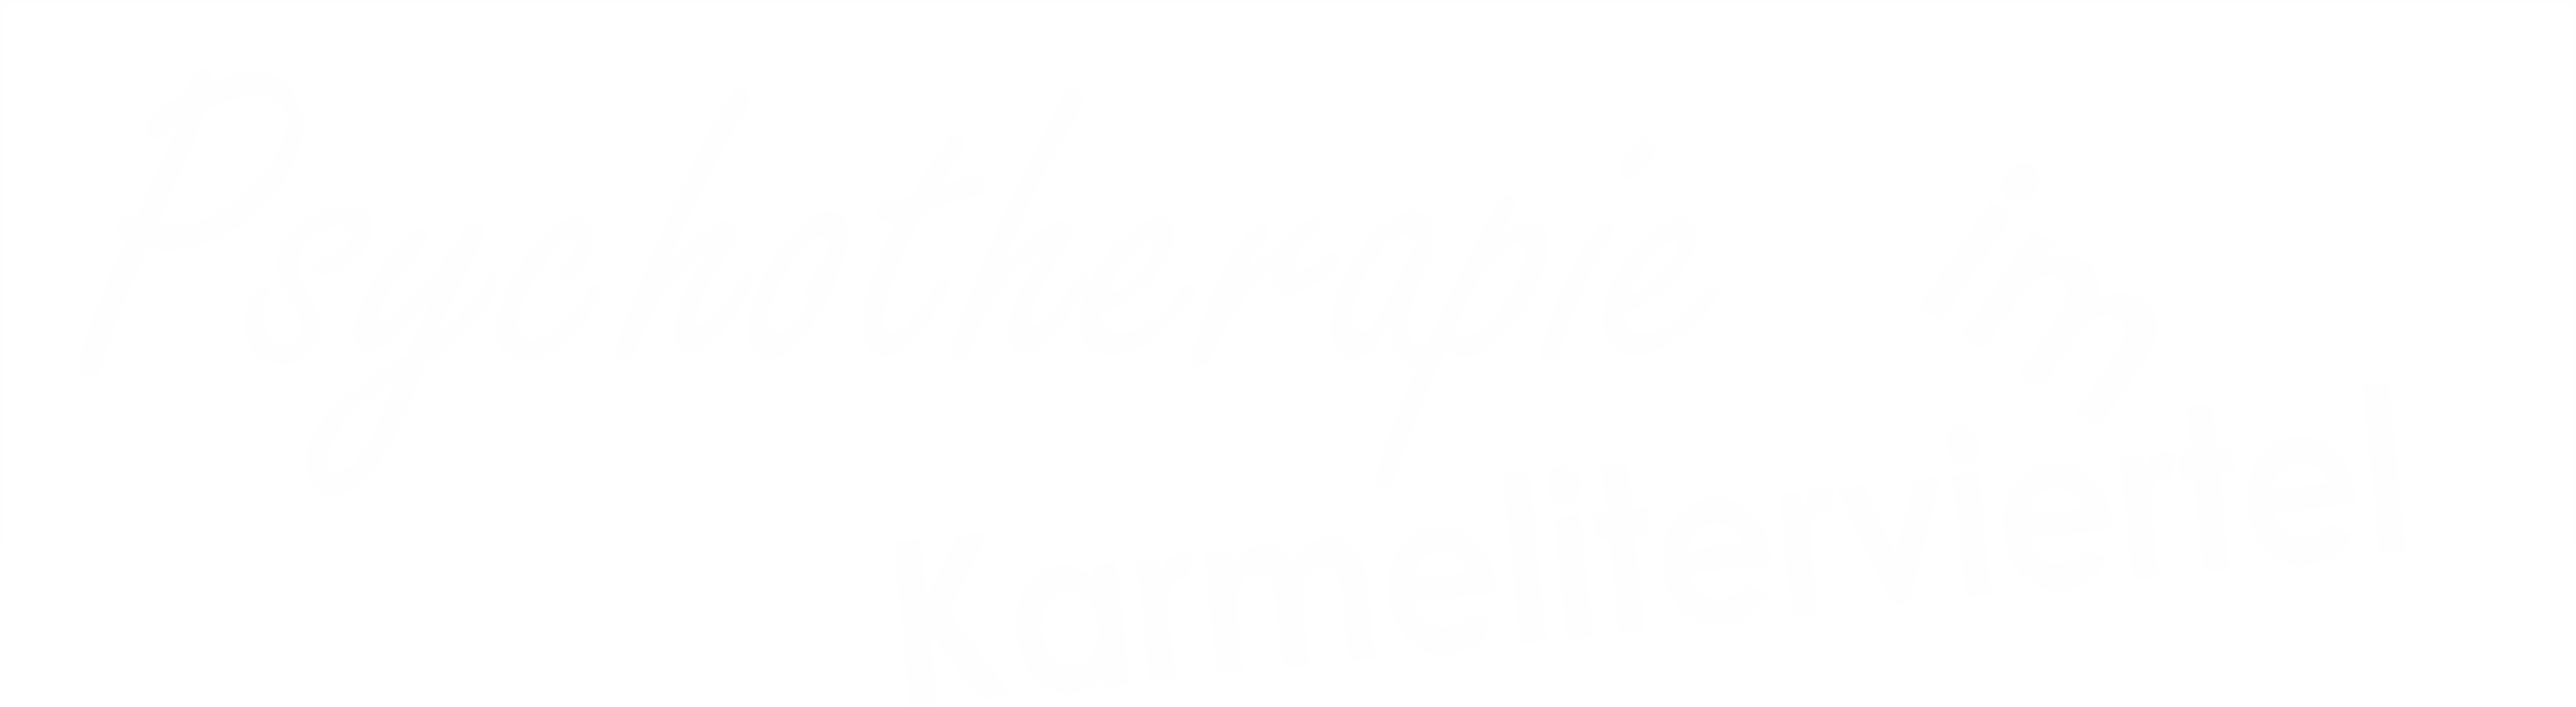 Logo Psychotherapie im Karmeliterviertel